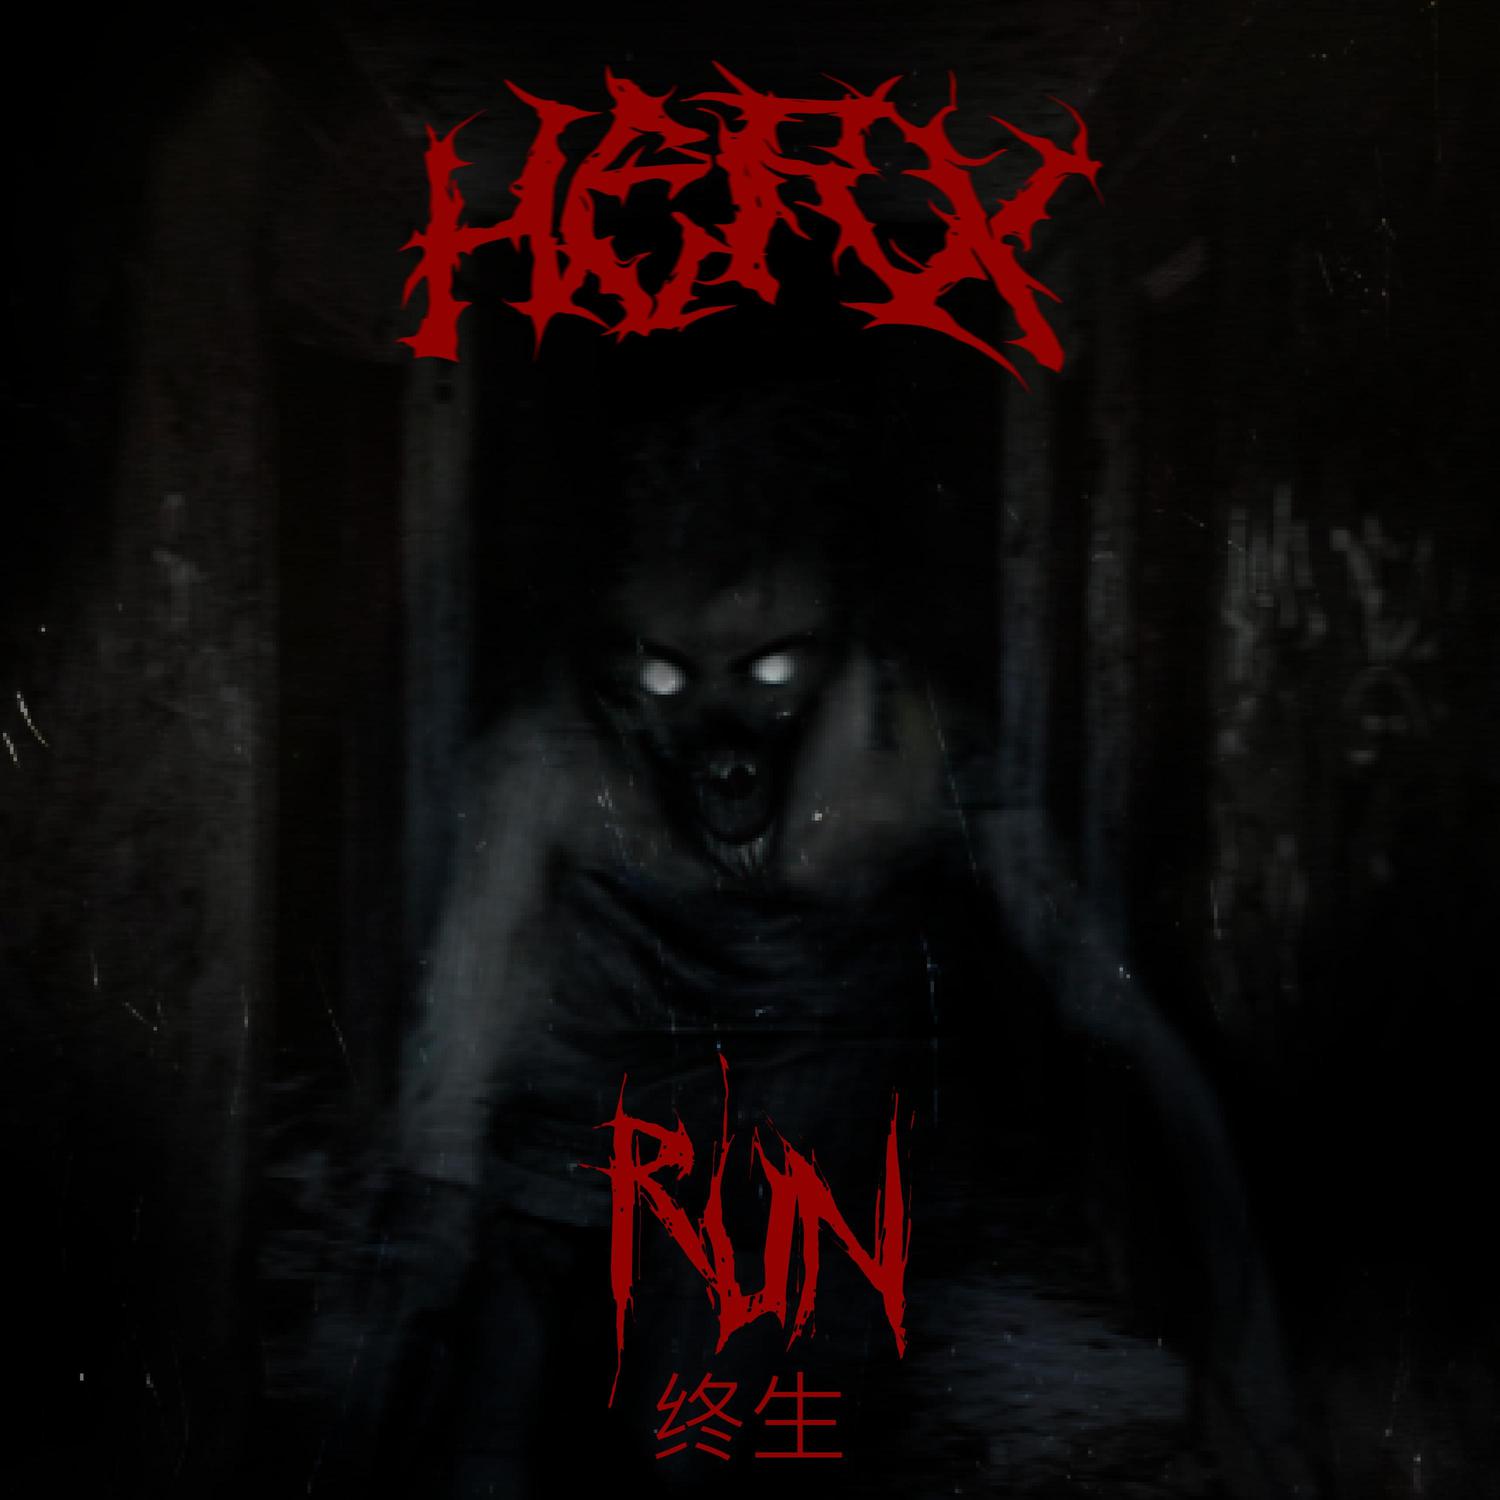 HERX - RUN 终生